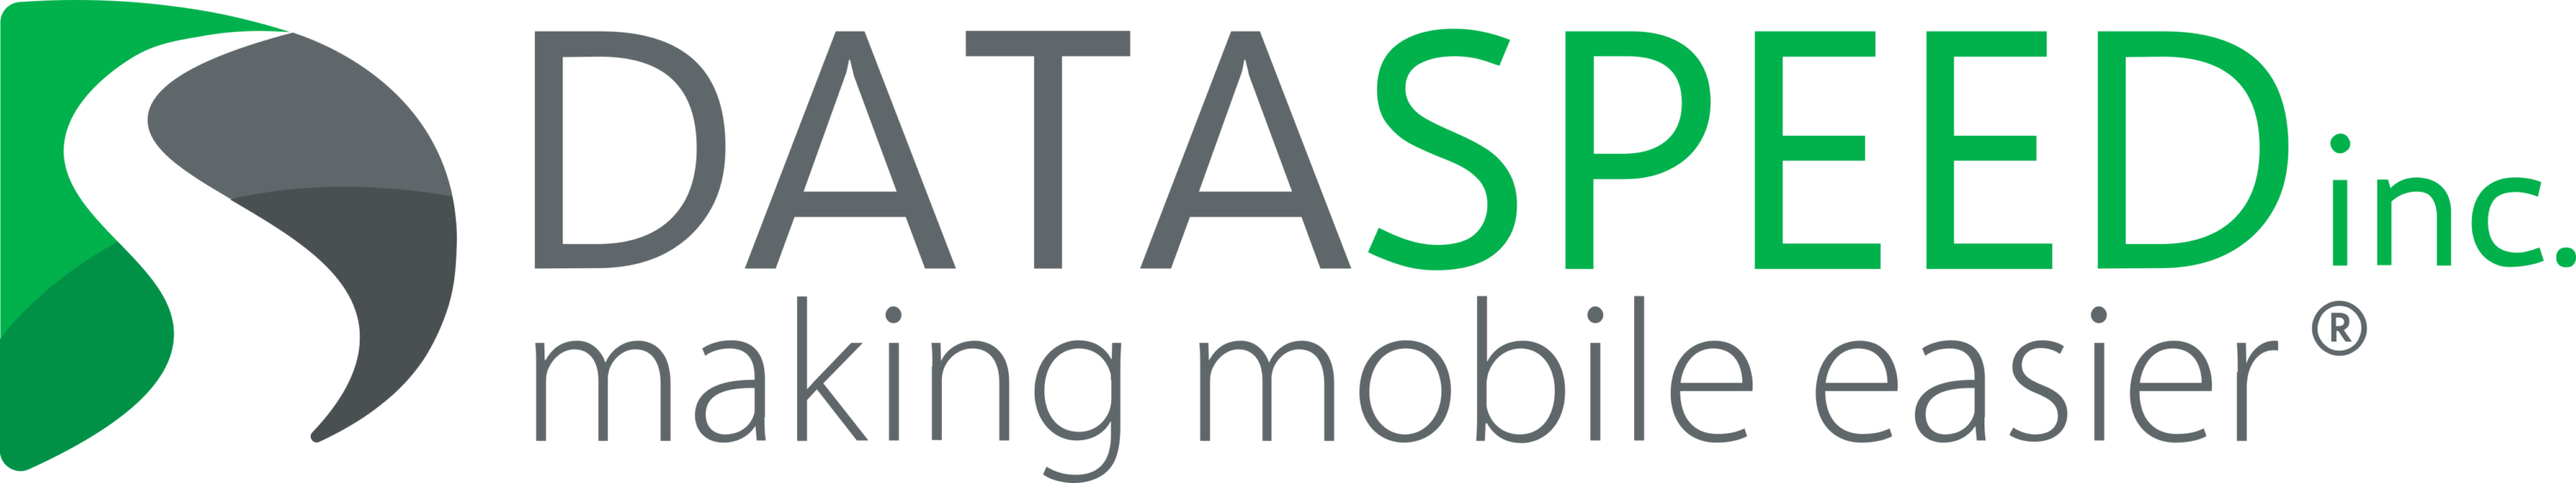 Dataspeed Logo